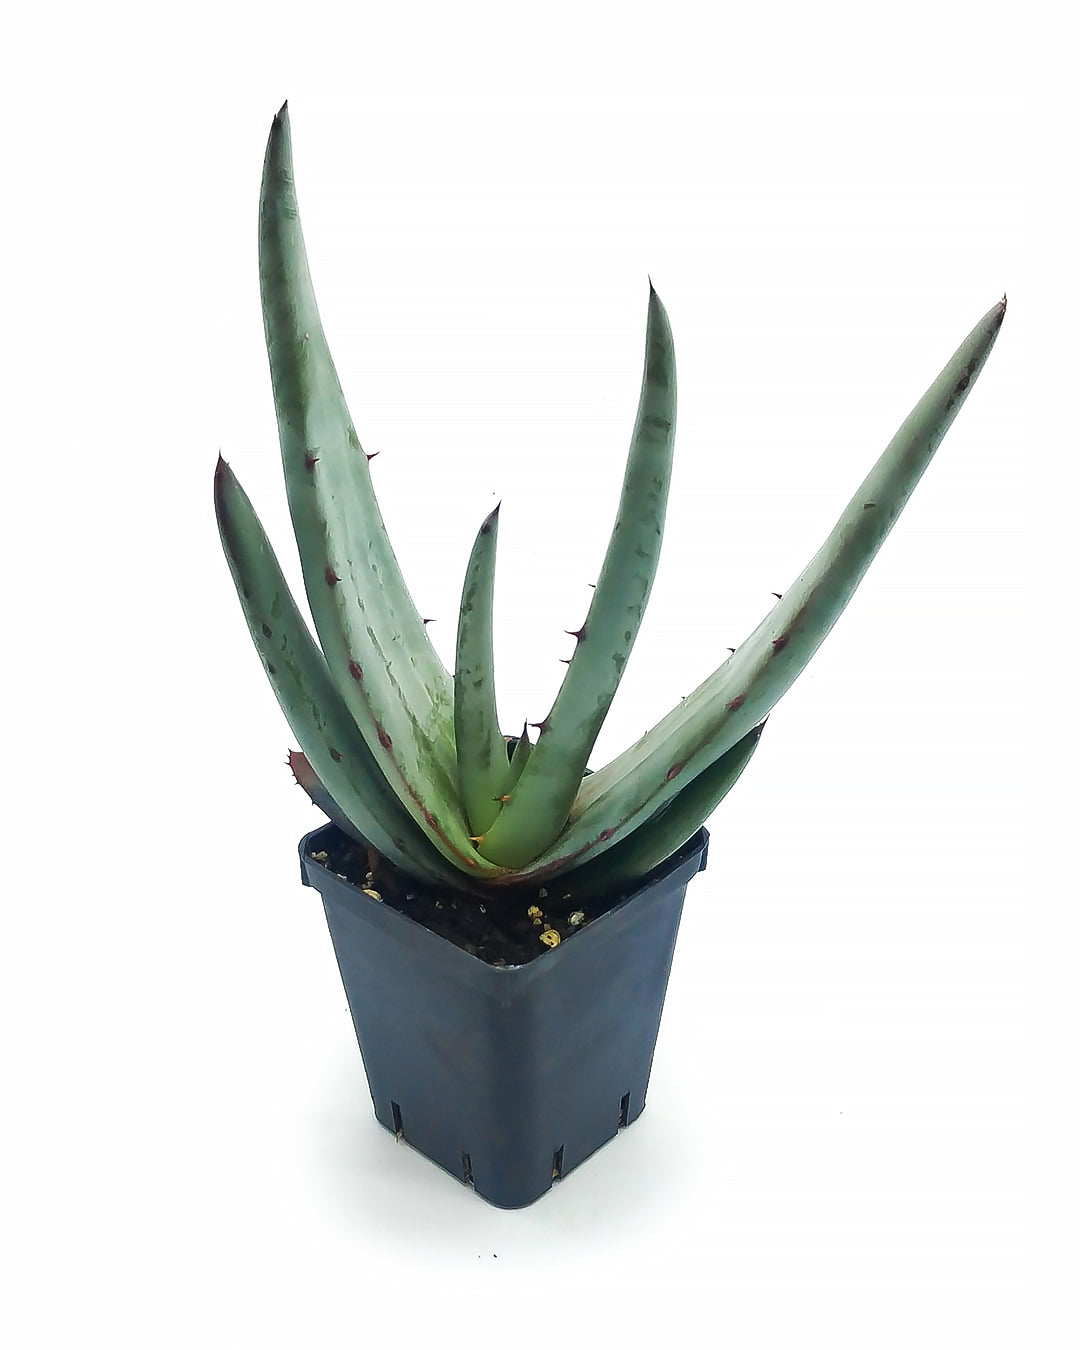 Aloe petricola - aloe di pietra (Vaso quadro 7x7x8 cm)